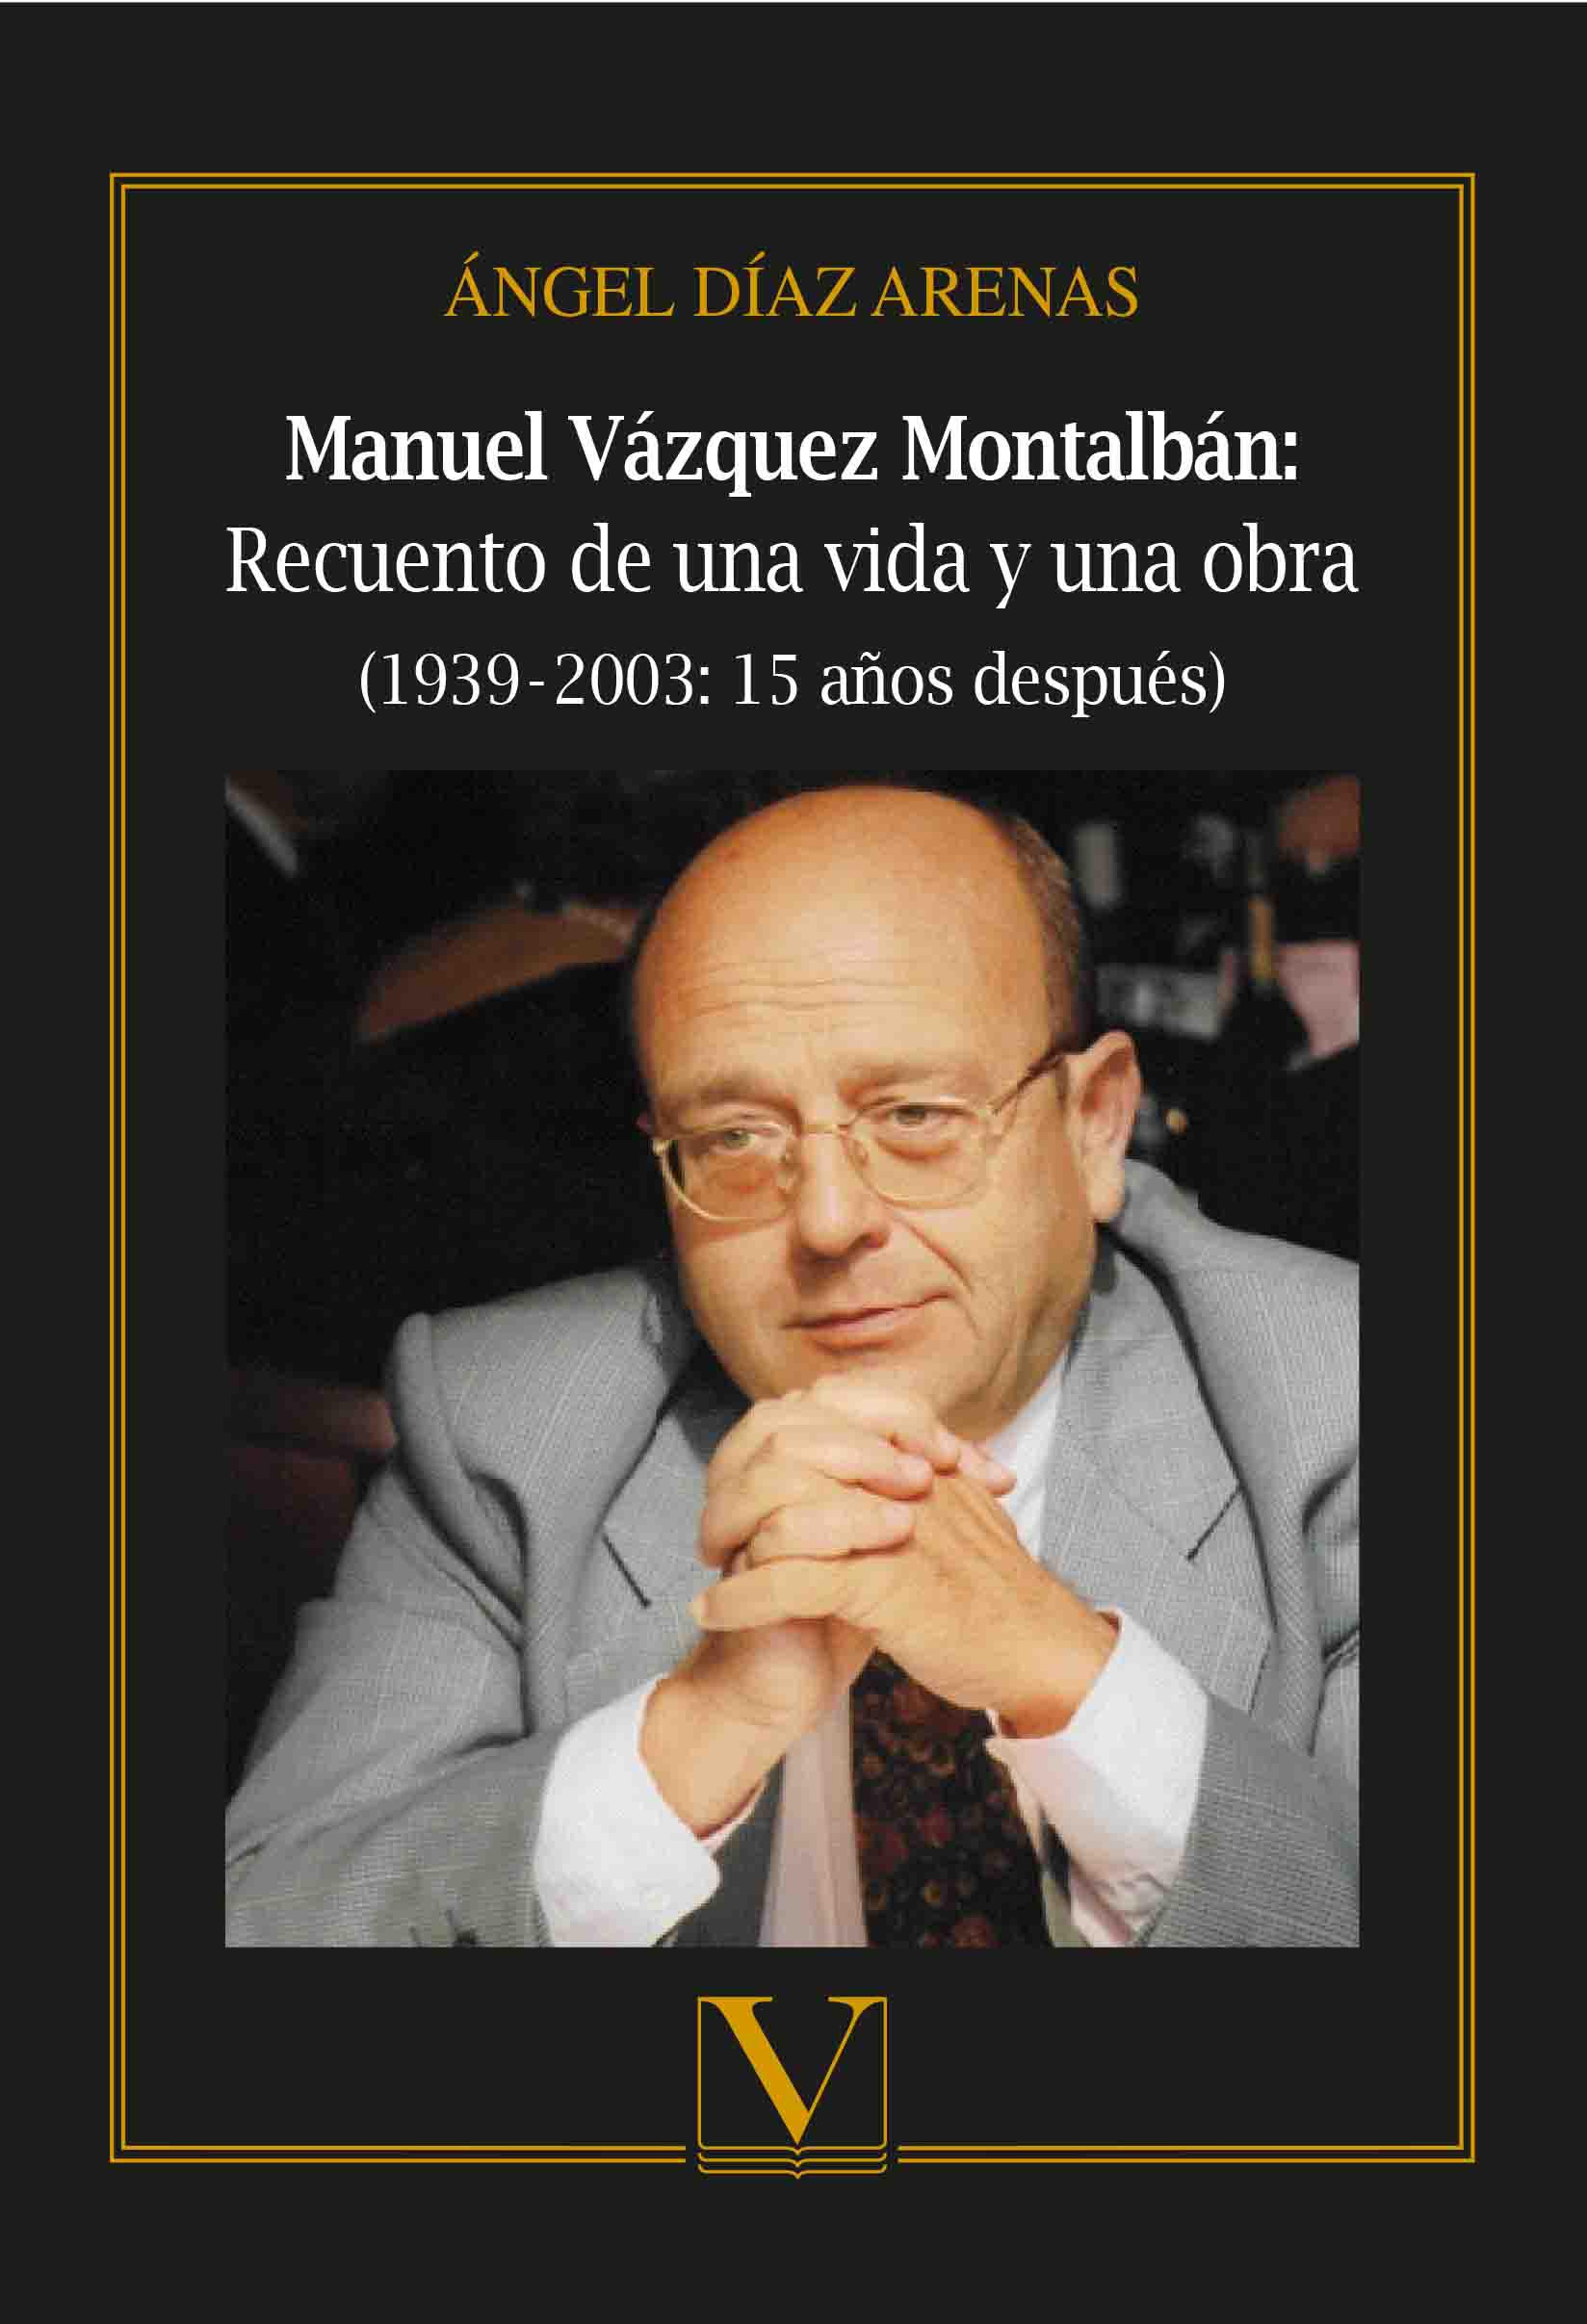 Manuel Vázquez Montalbán: recuento de una vida y una obra. 9788490749739